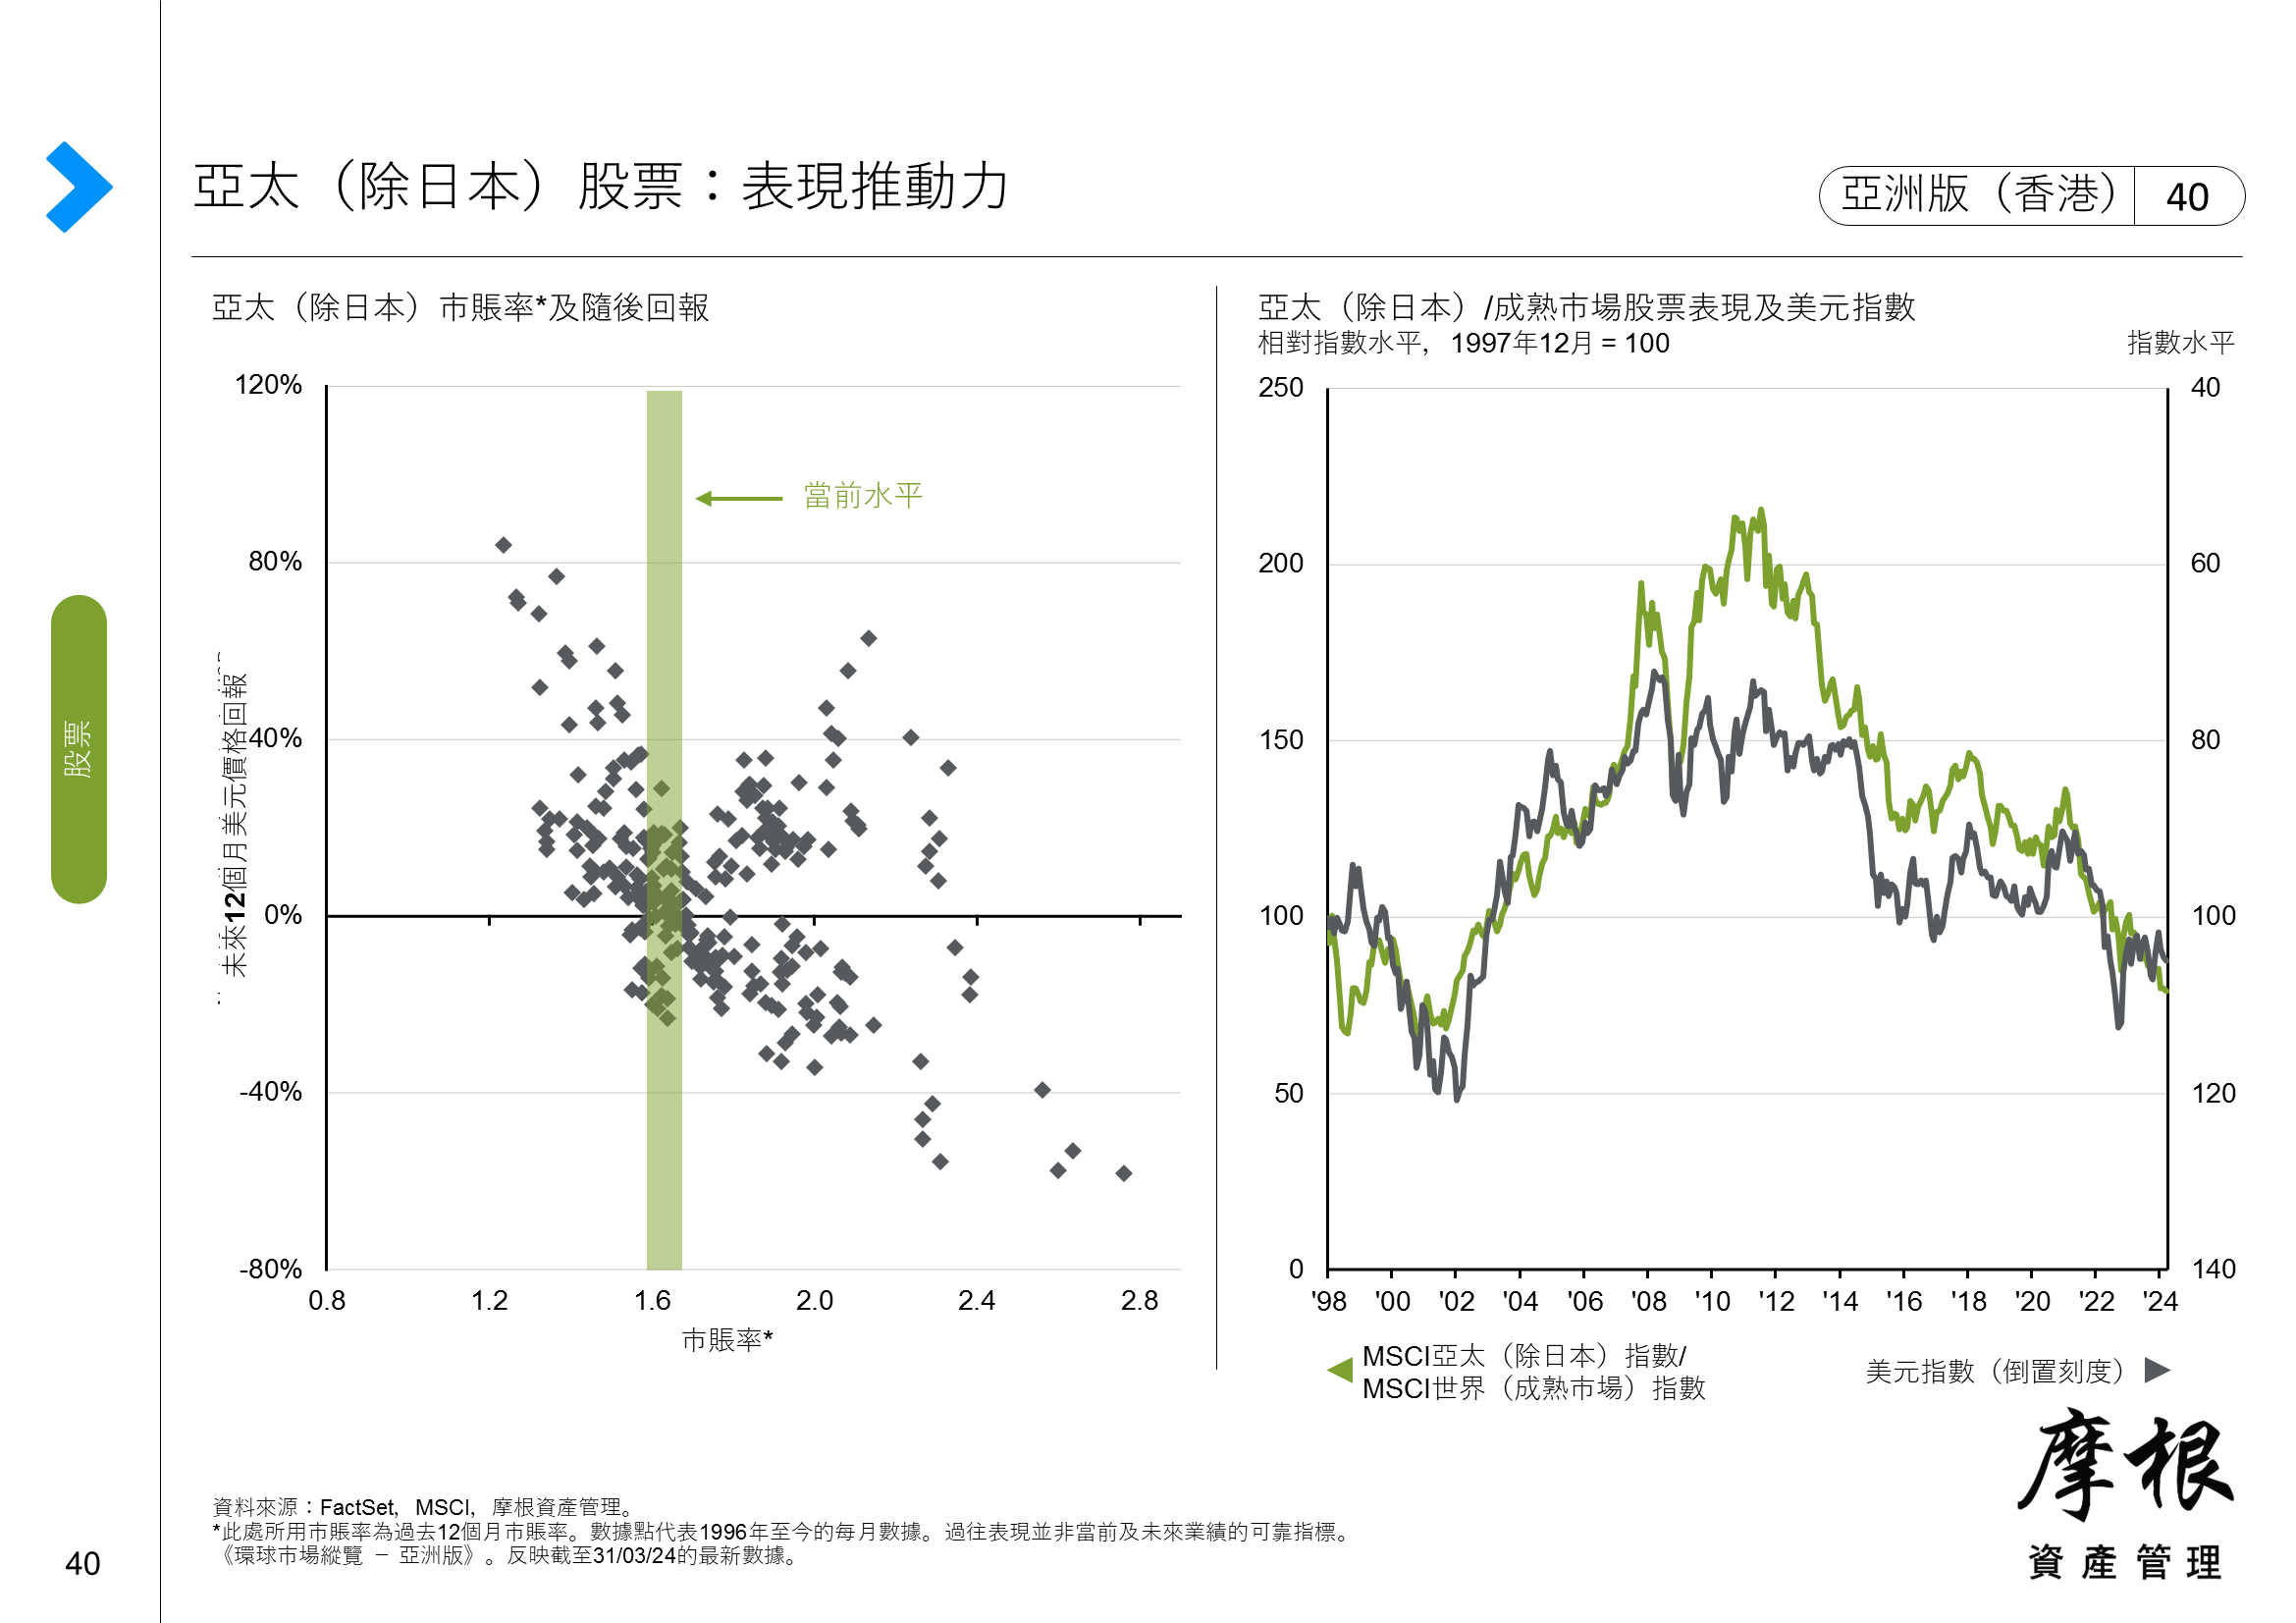 亞太（除日本）股票：按收入來源劃分的盈利趨勢及出口